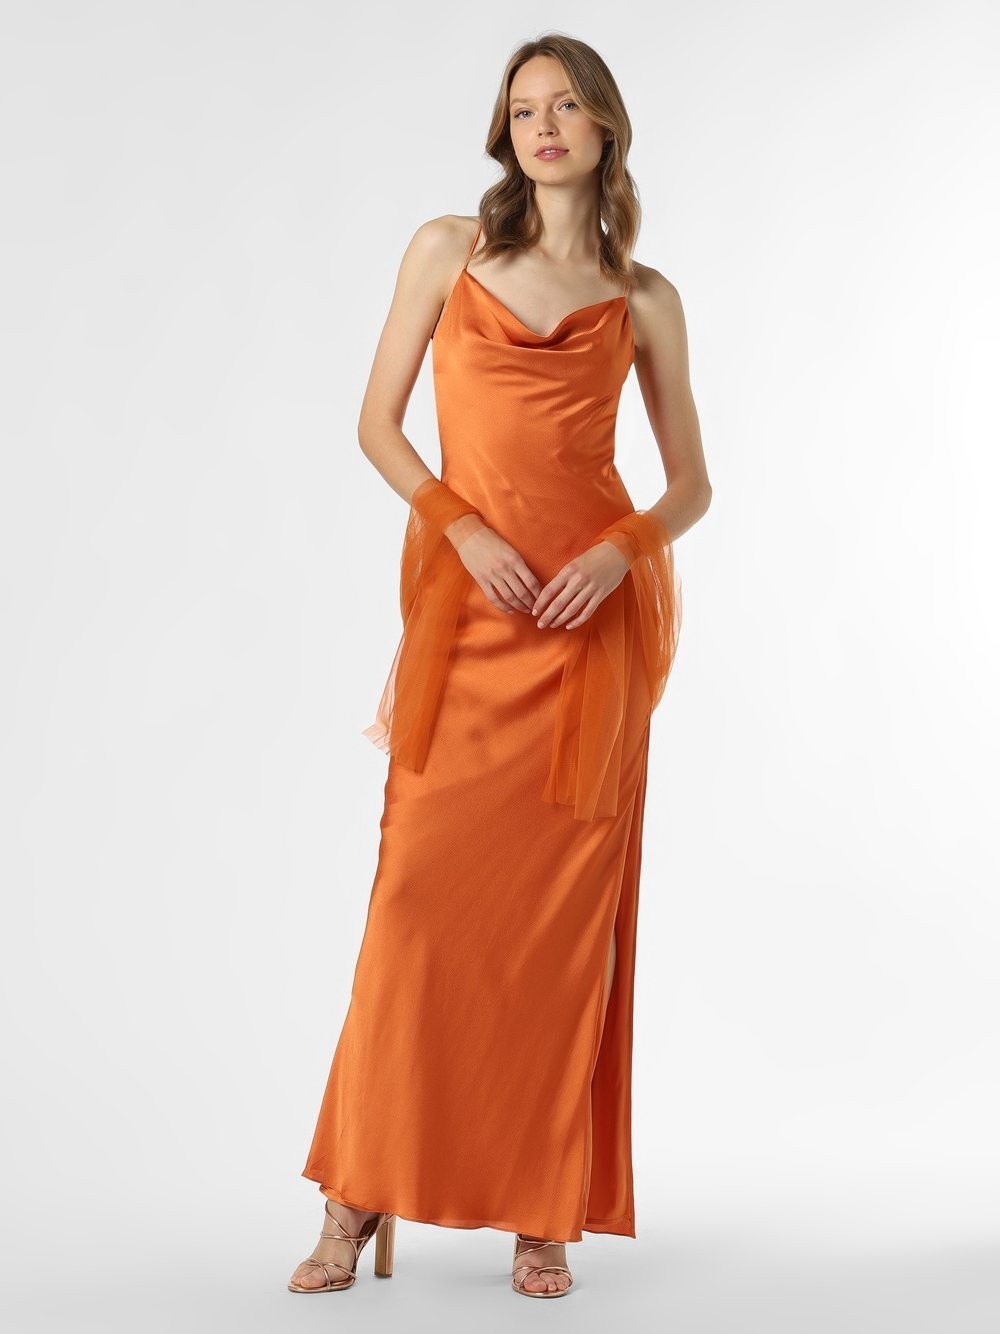 Unique Damska sukienka wieczorowa z etolą, pomarańczowy